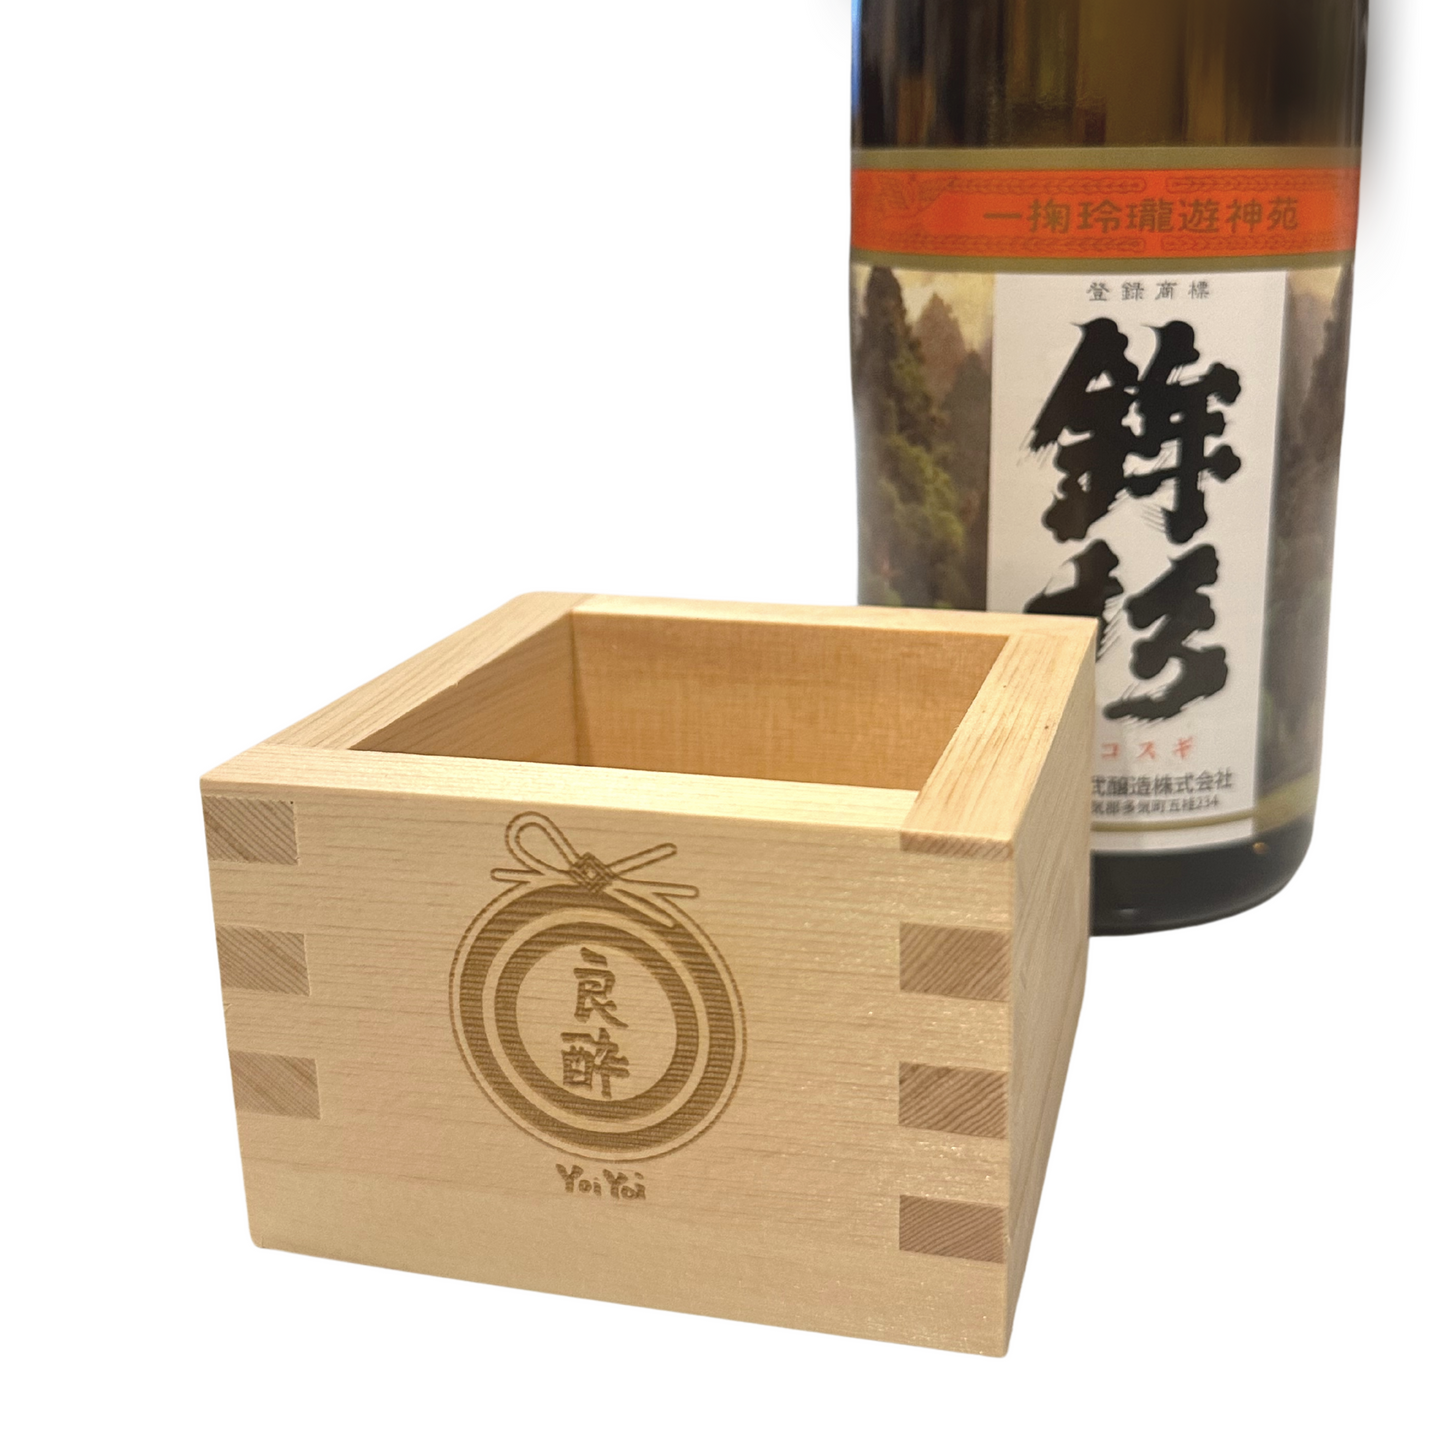 YoiYoi Masu cup Sake wooden box Traditional Japanese Hinoki Handmade Made in Japan sake Mokkiri 桝 もっきり 冷酒杯 冷酒 日本酒  贈答 ギフト 杯 盃 ヒノキ